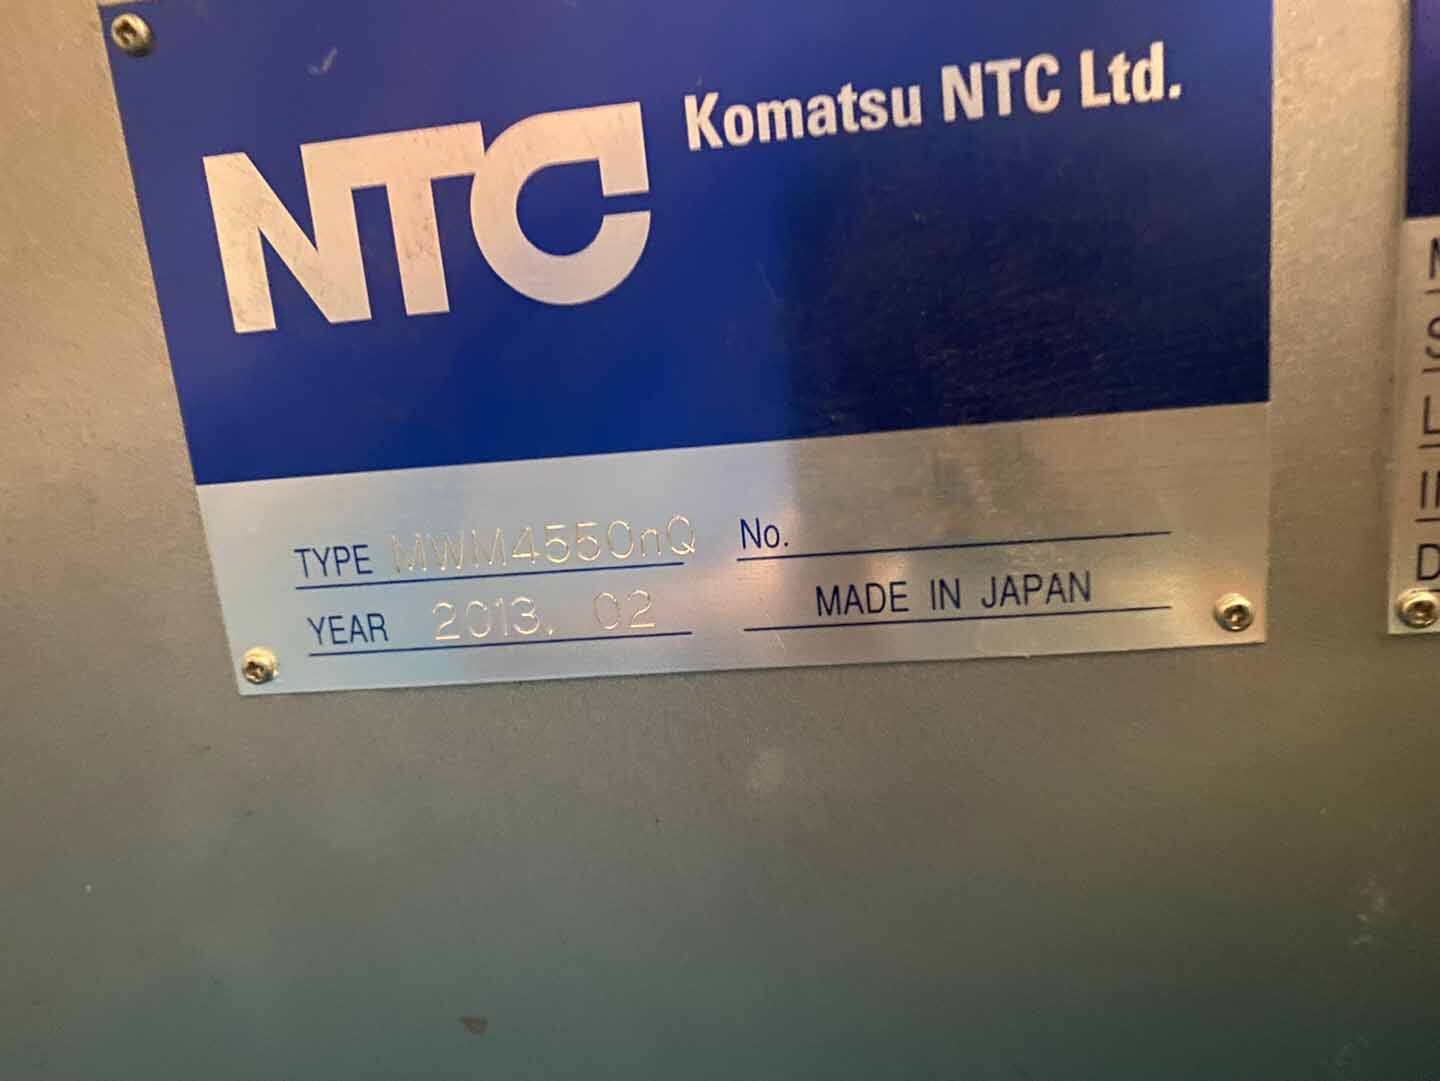 フォト（写真） 使用される KOMATSU NTC MWM 4550nQ 販売のために